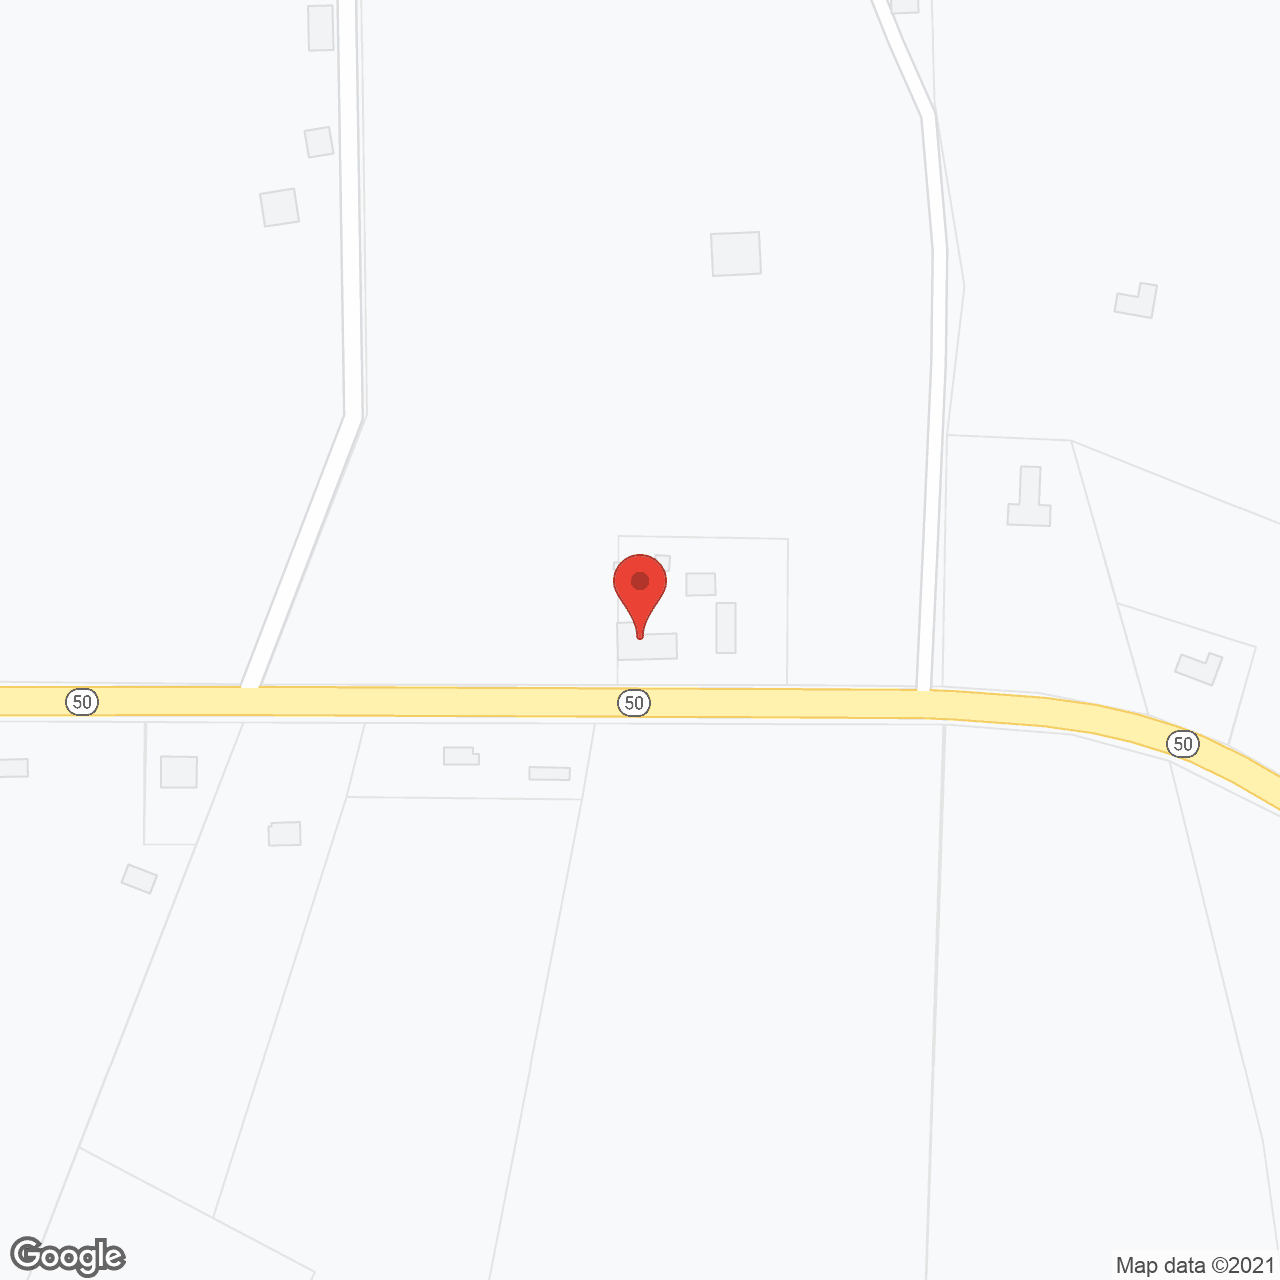 Pen-Du Rest Home in google map